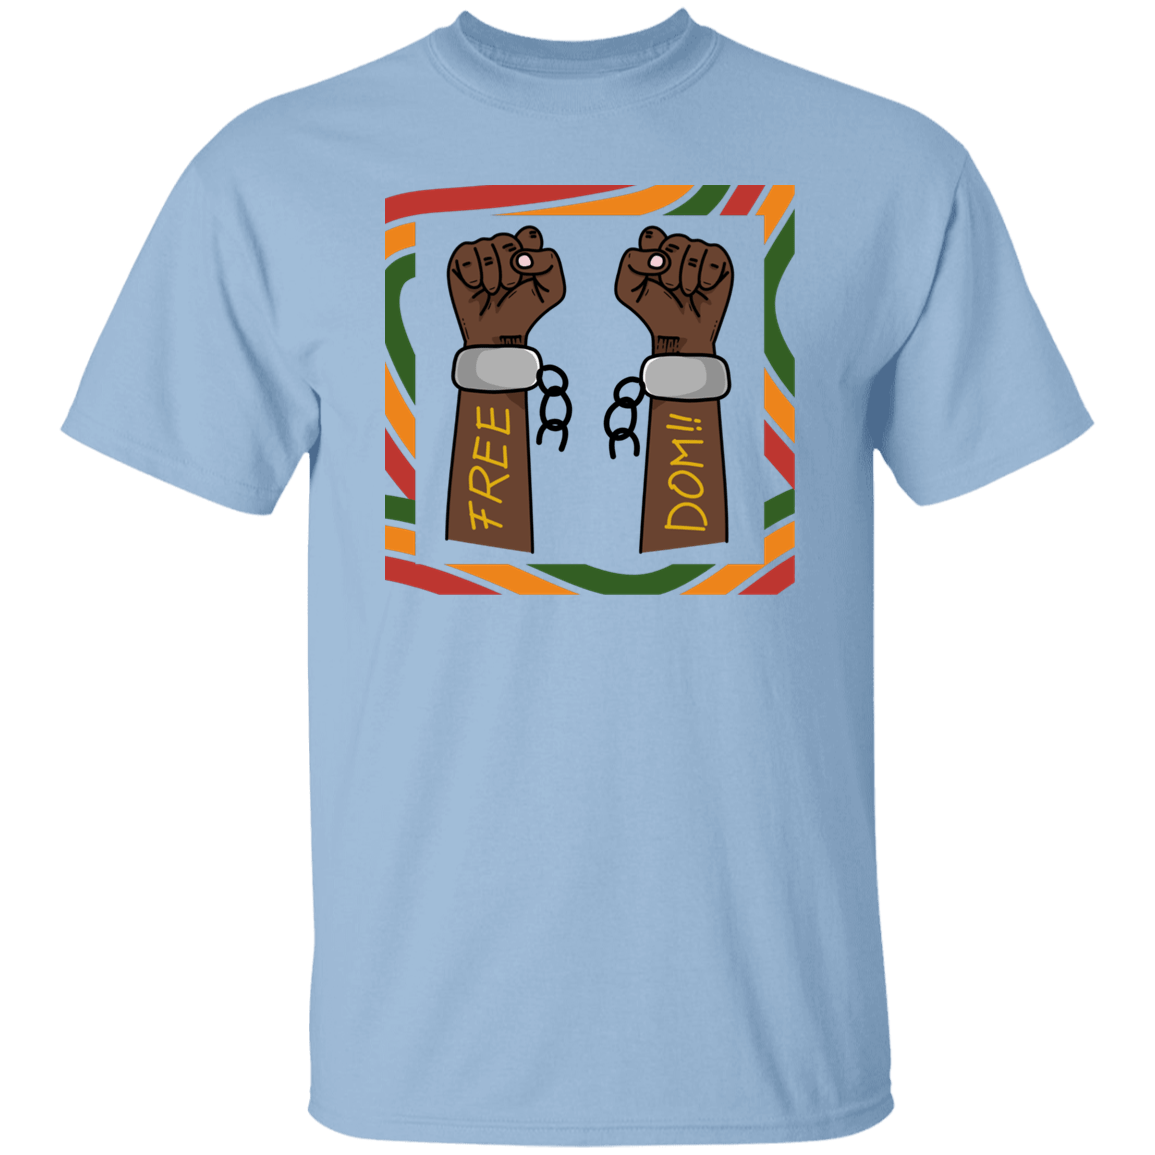 2 Fist Freedom T-Shirt